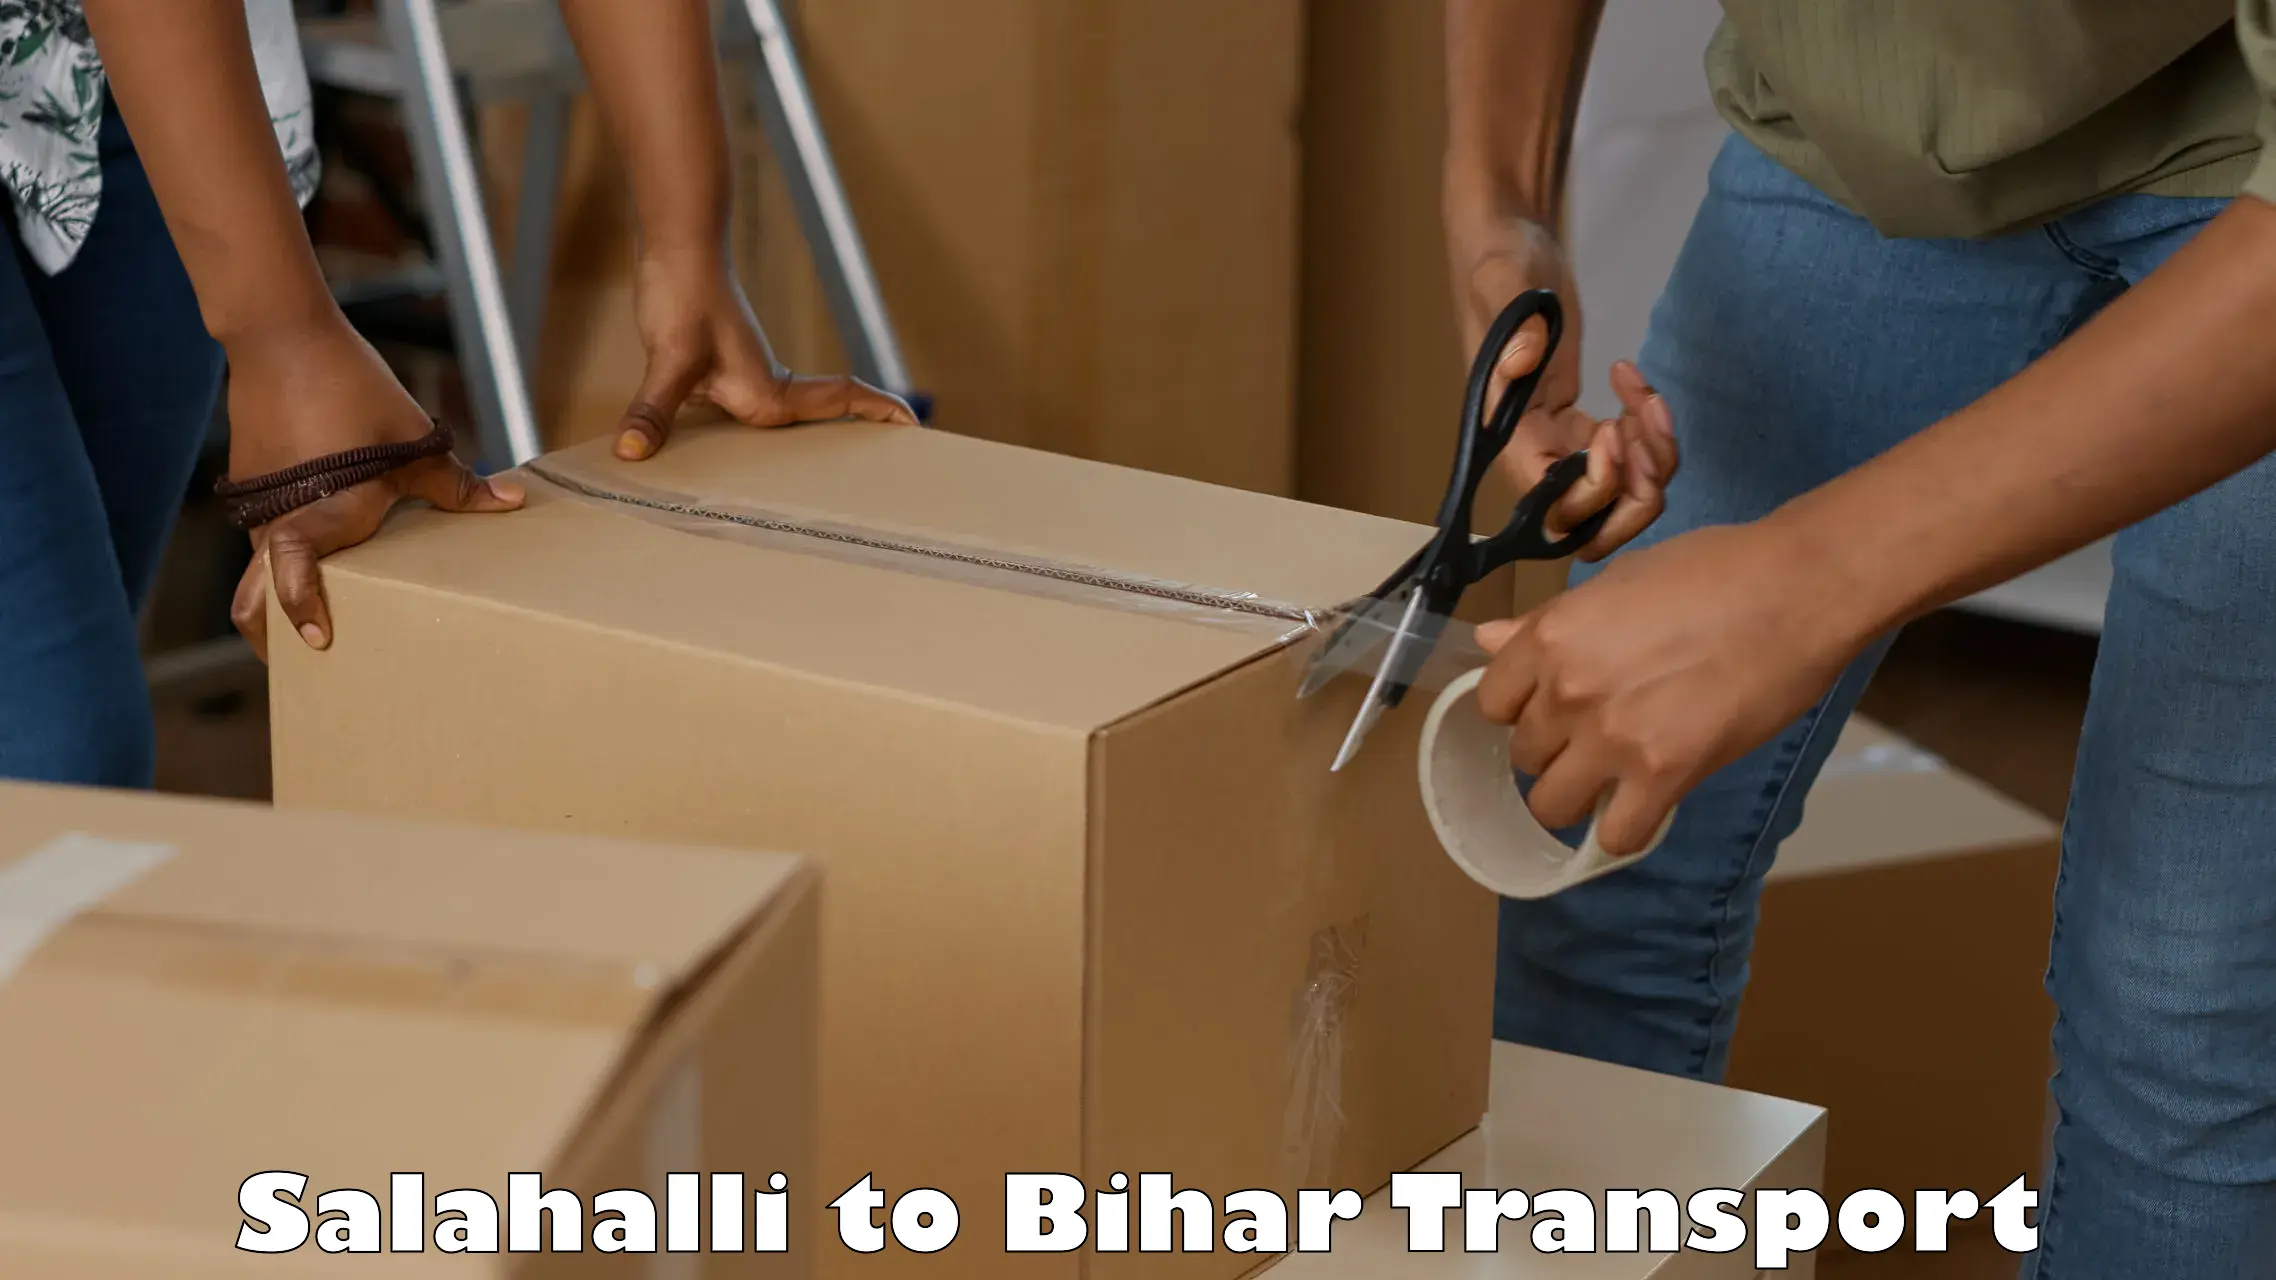 Container transport service Salahalli to Fatwah